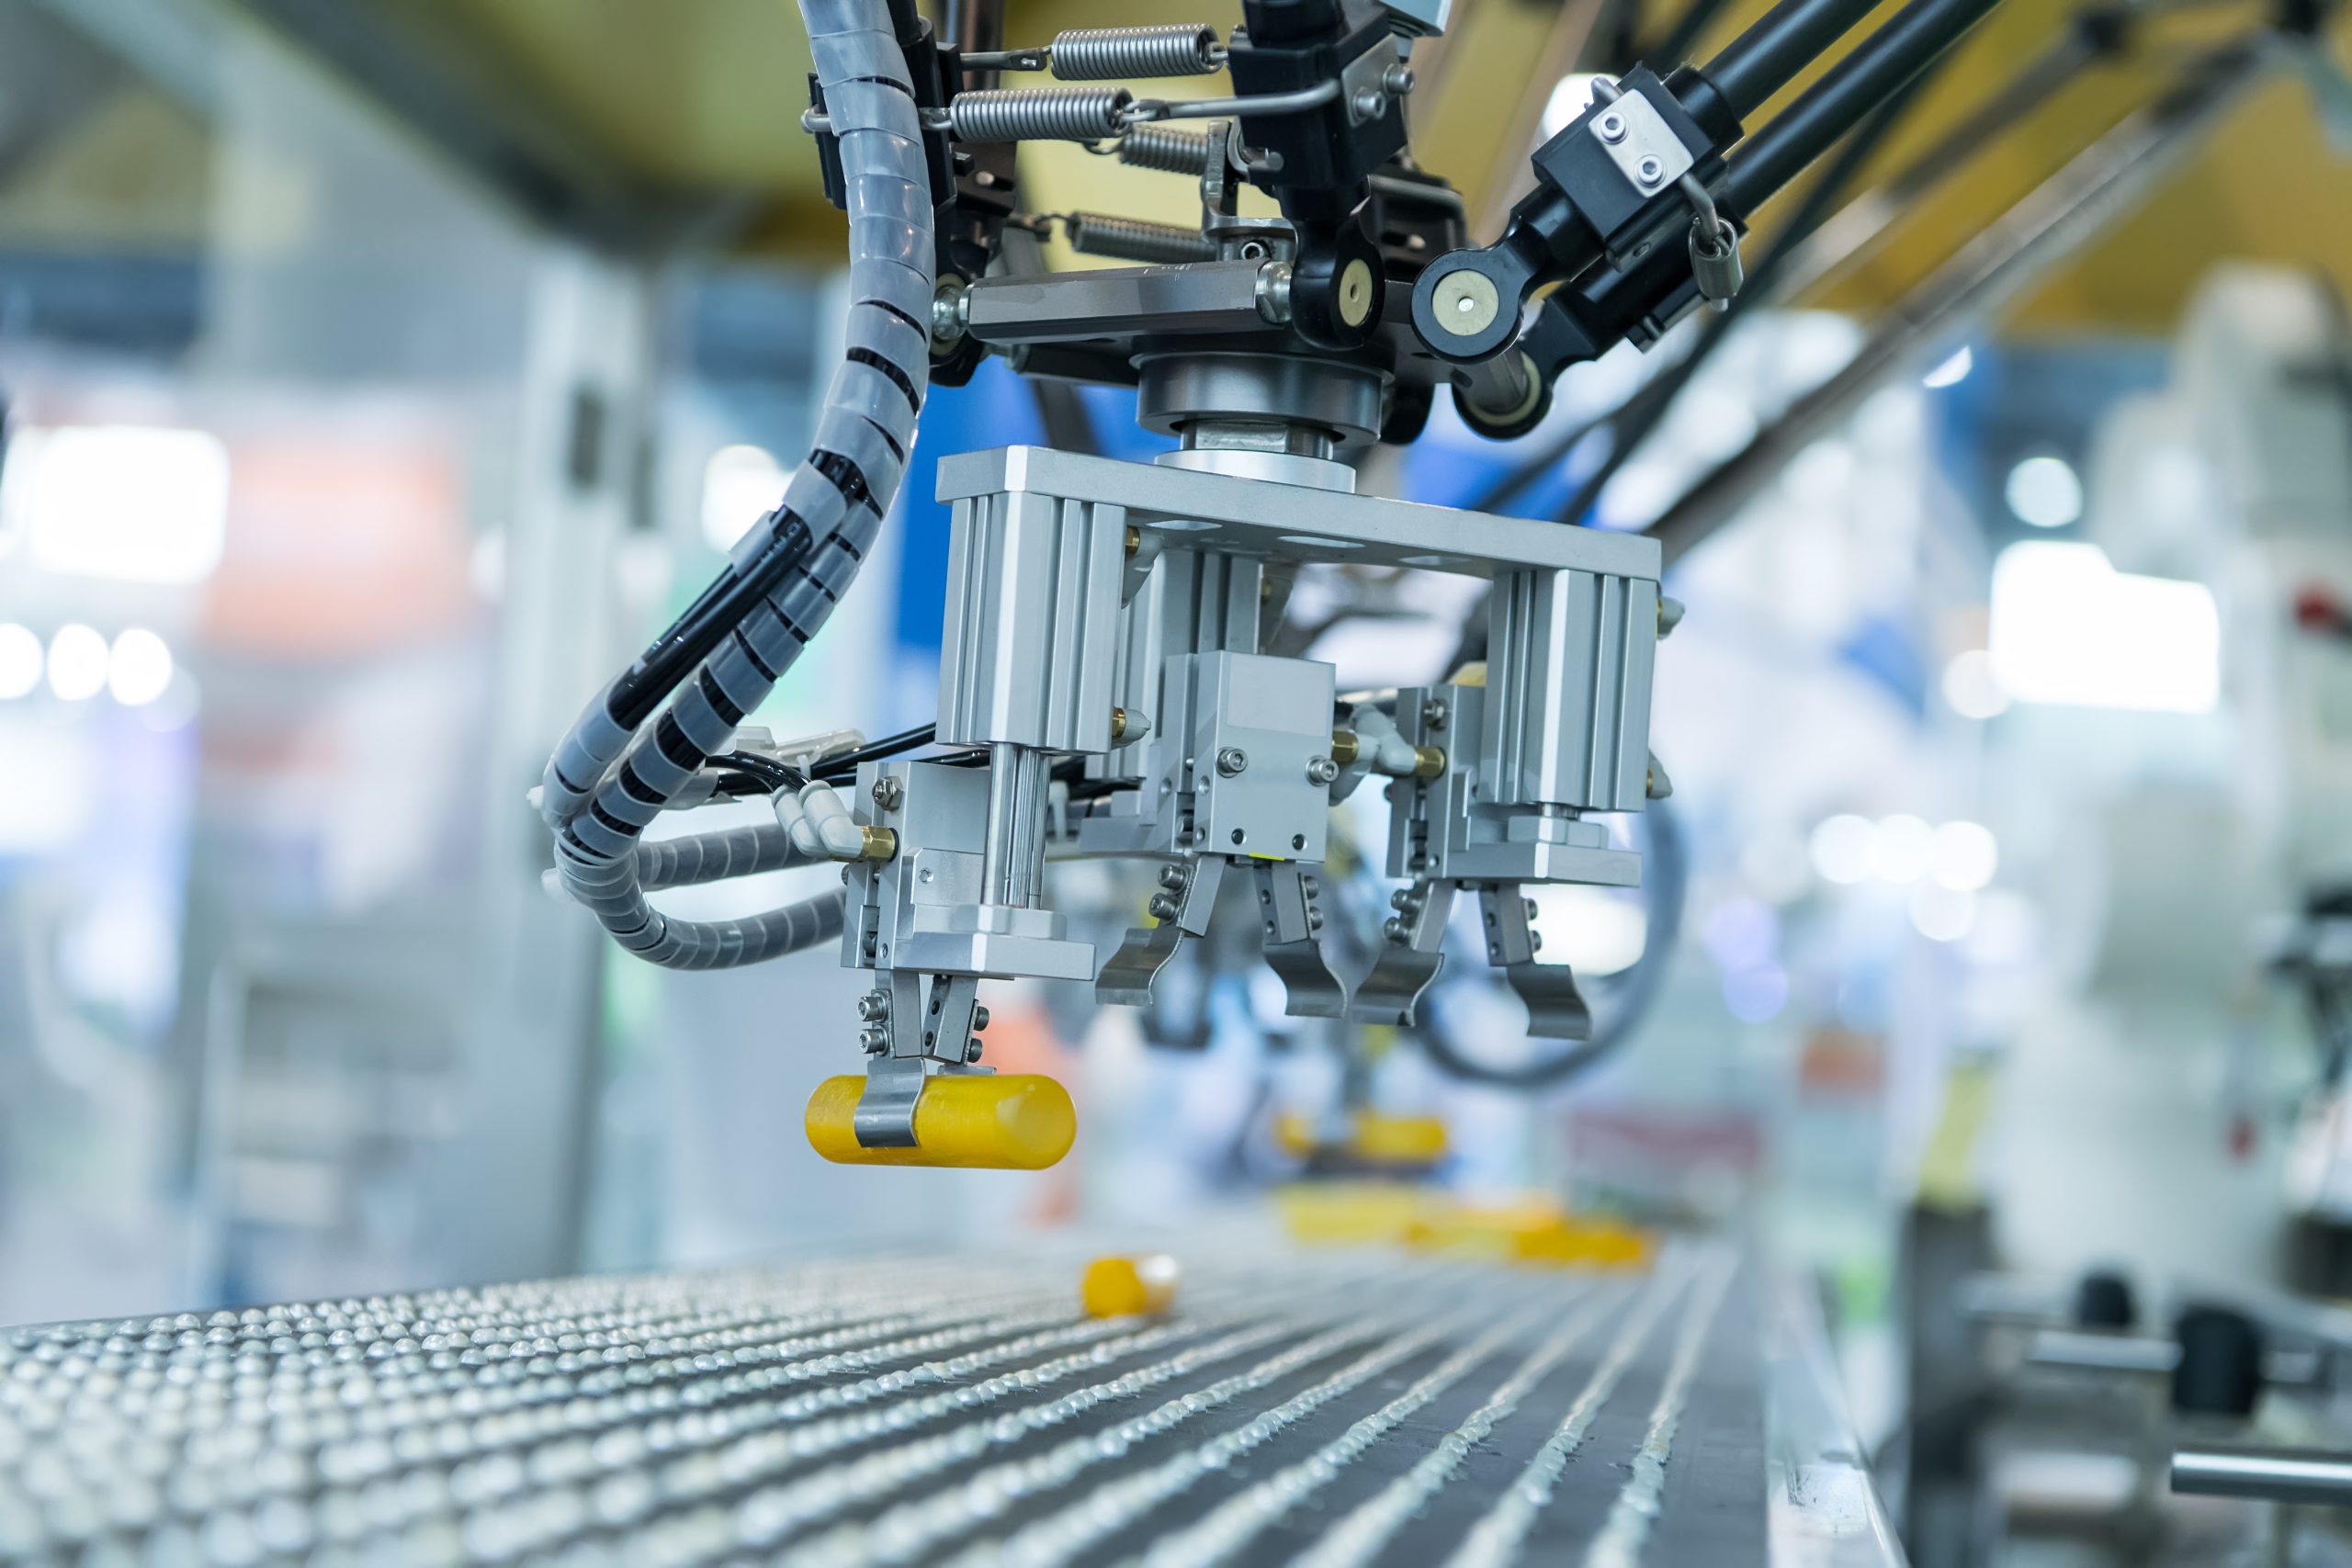 Zrobotyzowane systemy paletyzacji, roboty do pakowania, wdrażanie robotyzacji przemysłowej